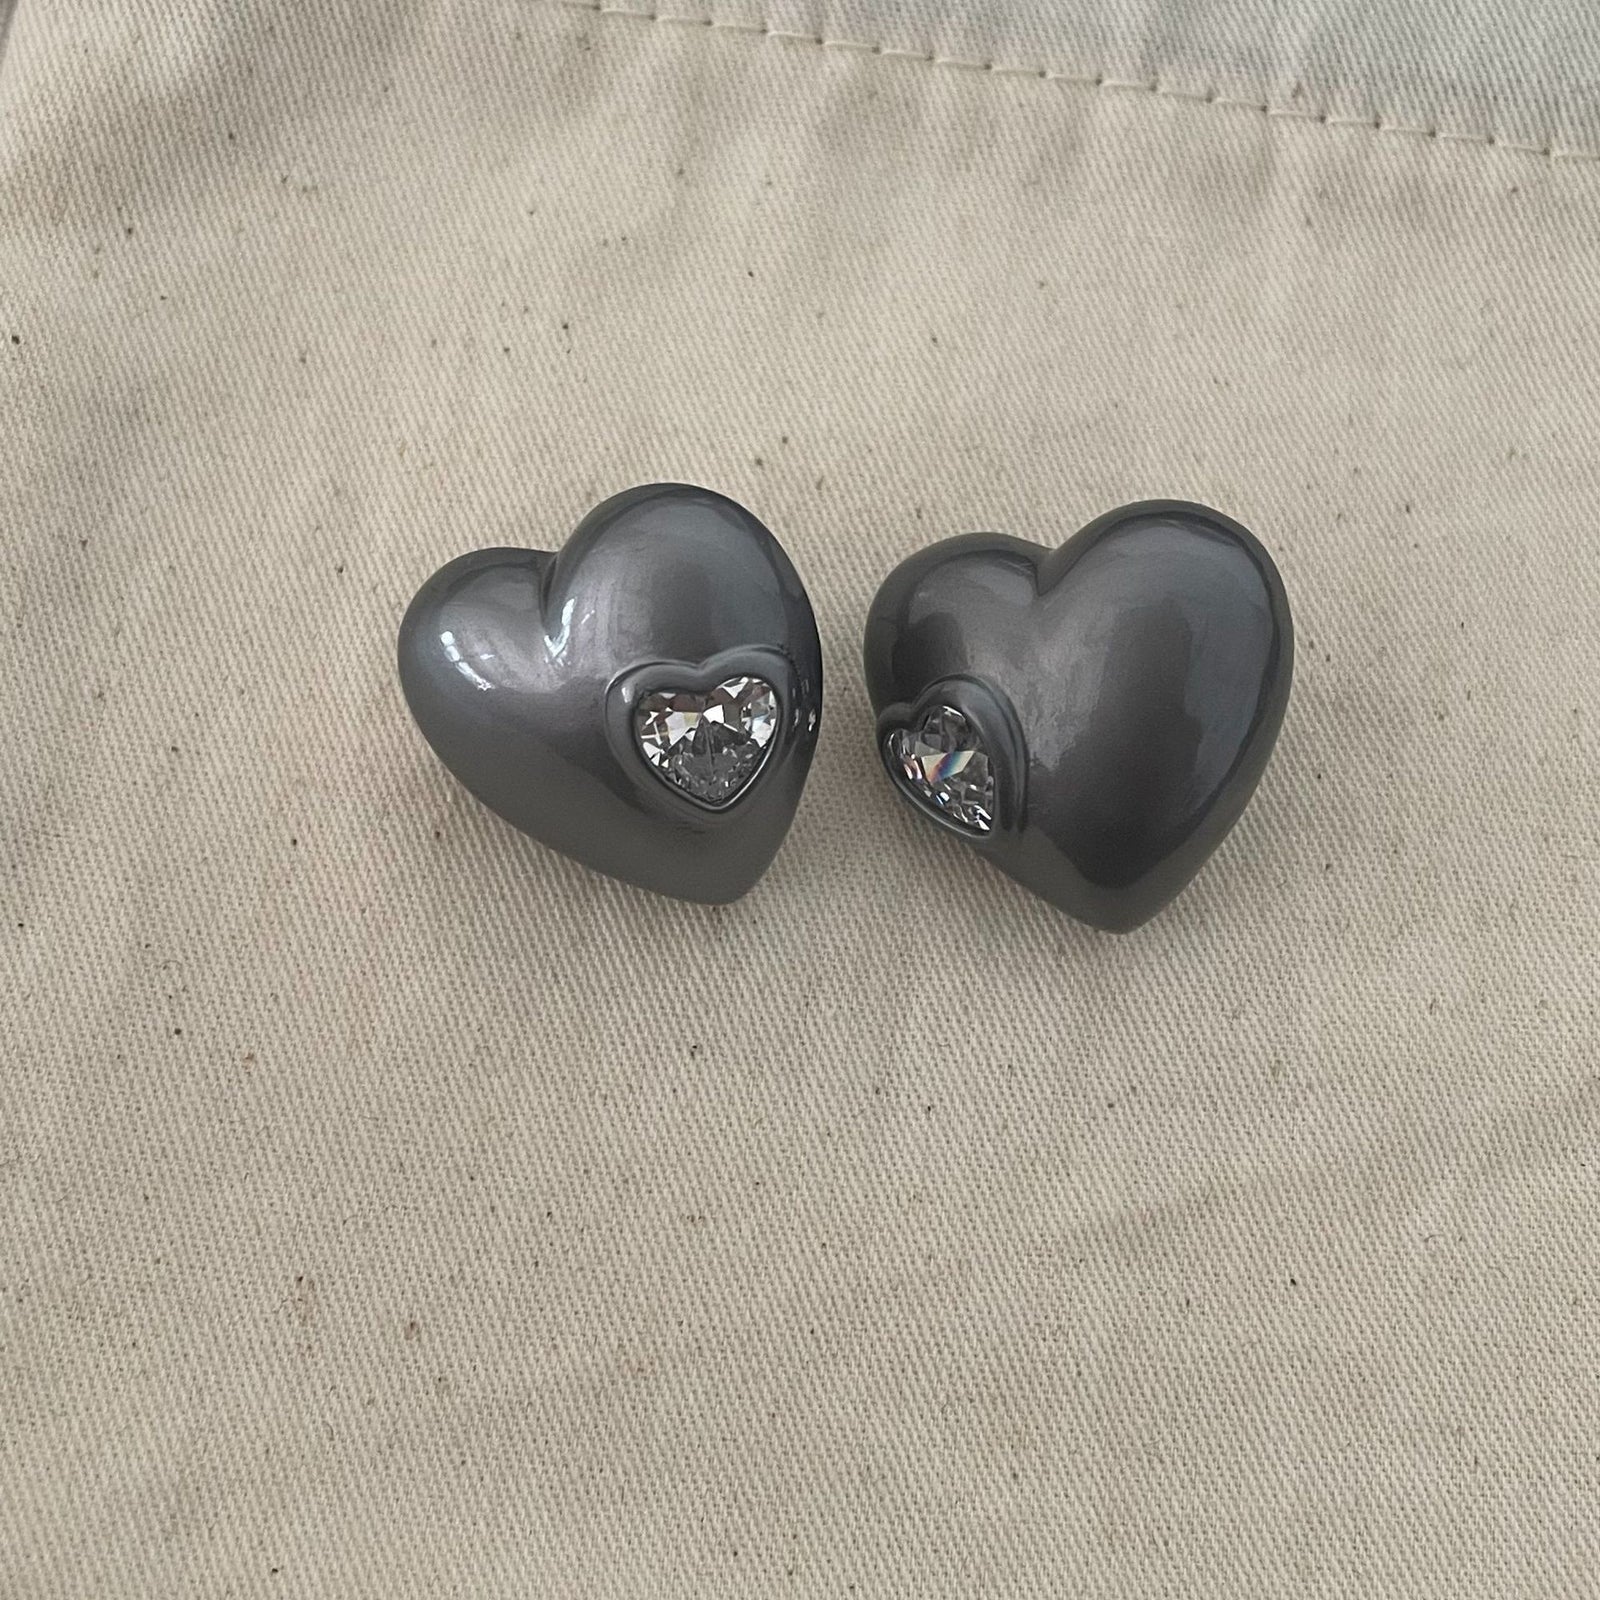 Chic Heart & Cross Earring Set